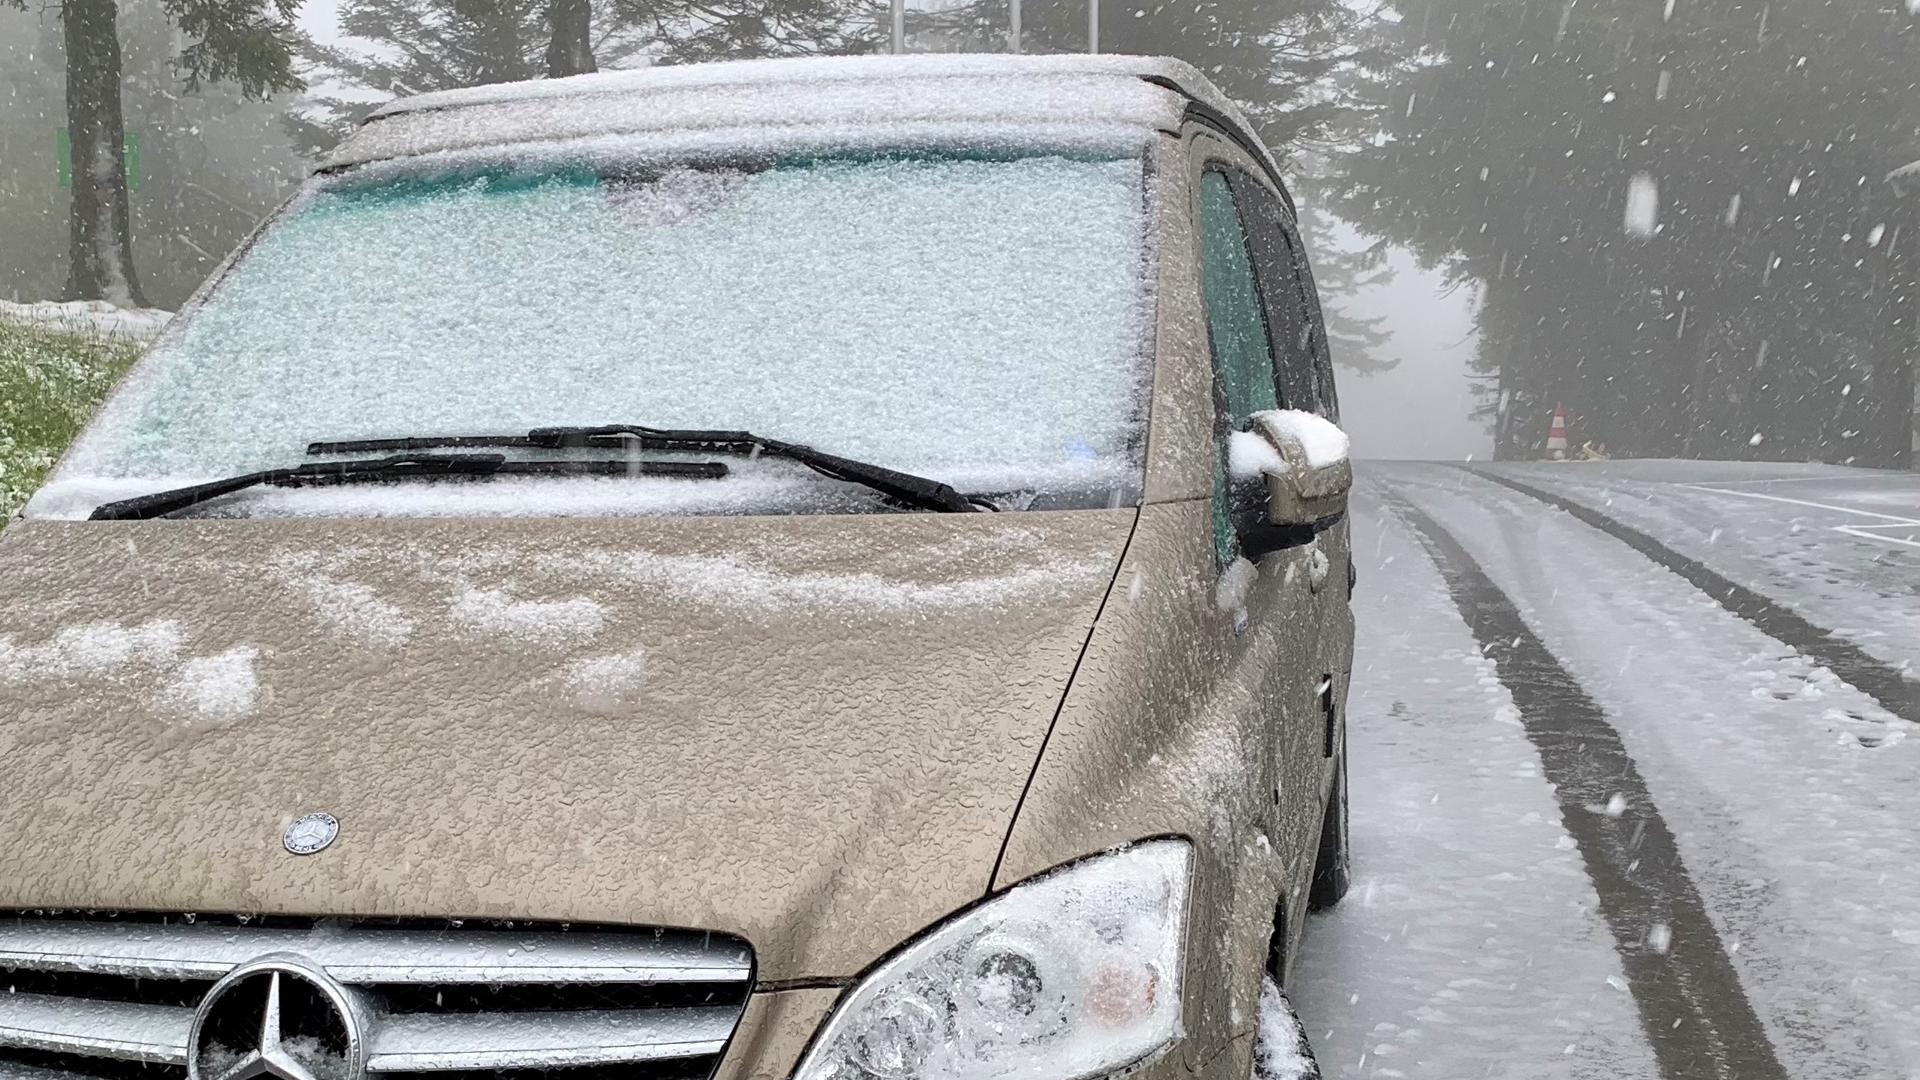 Ein parkendes Auto mit Schnee auf der Windschutzscheibe. Auch auf der Straße liegt eine dünne Schneeschicht.